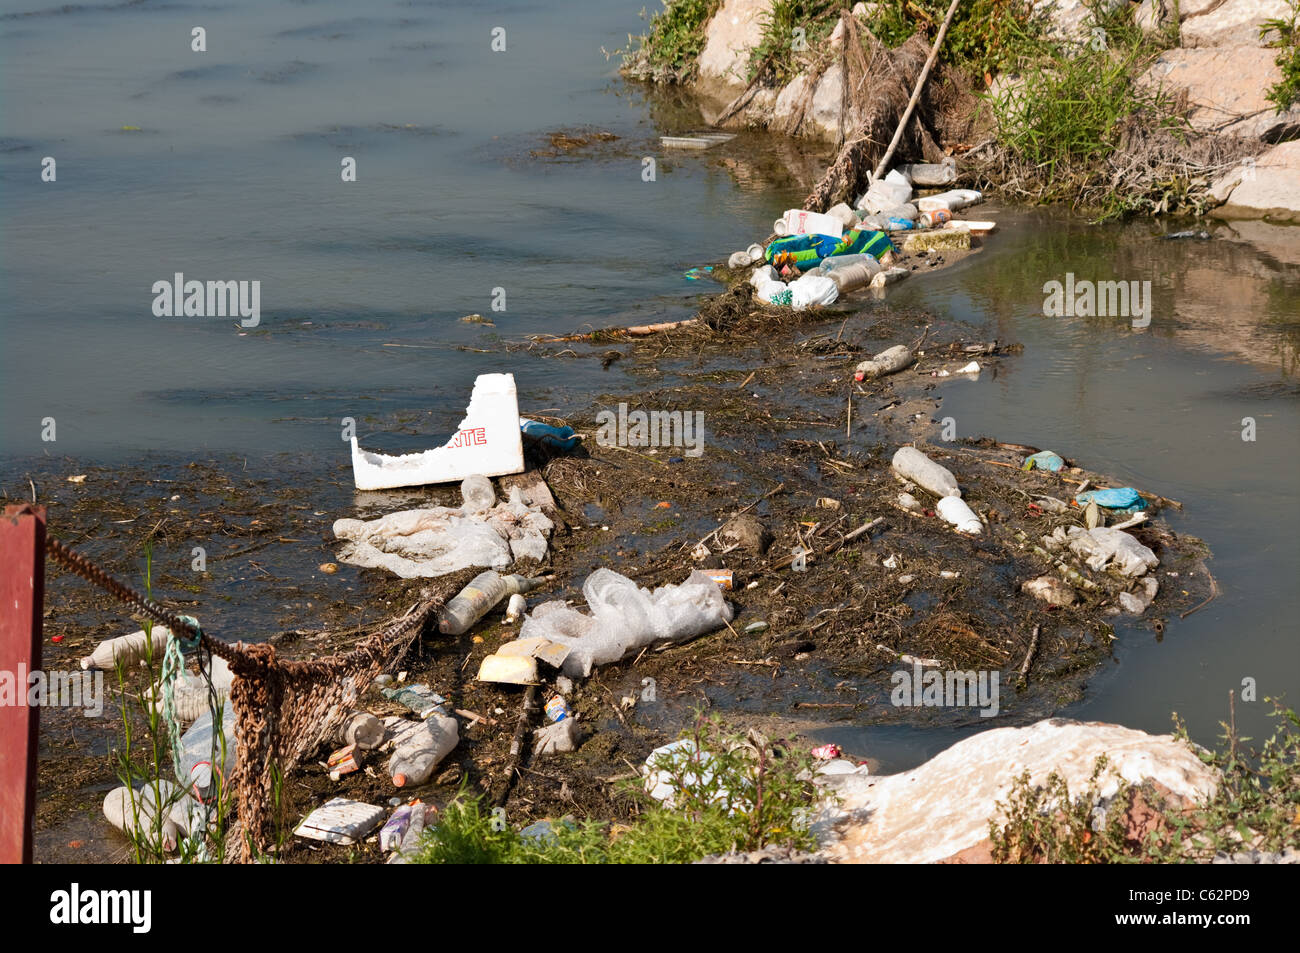 Verschmutzung von Flüssen verursacht durch menschliche Abfälle und Müll in einem spanischen Fluss verworfen Stockfoto